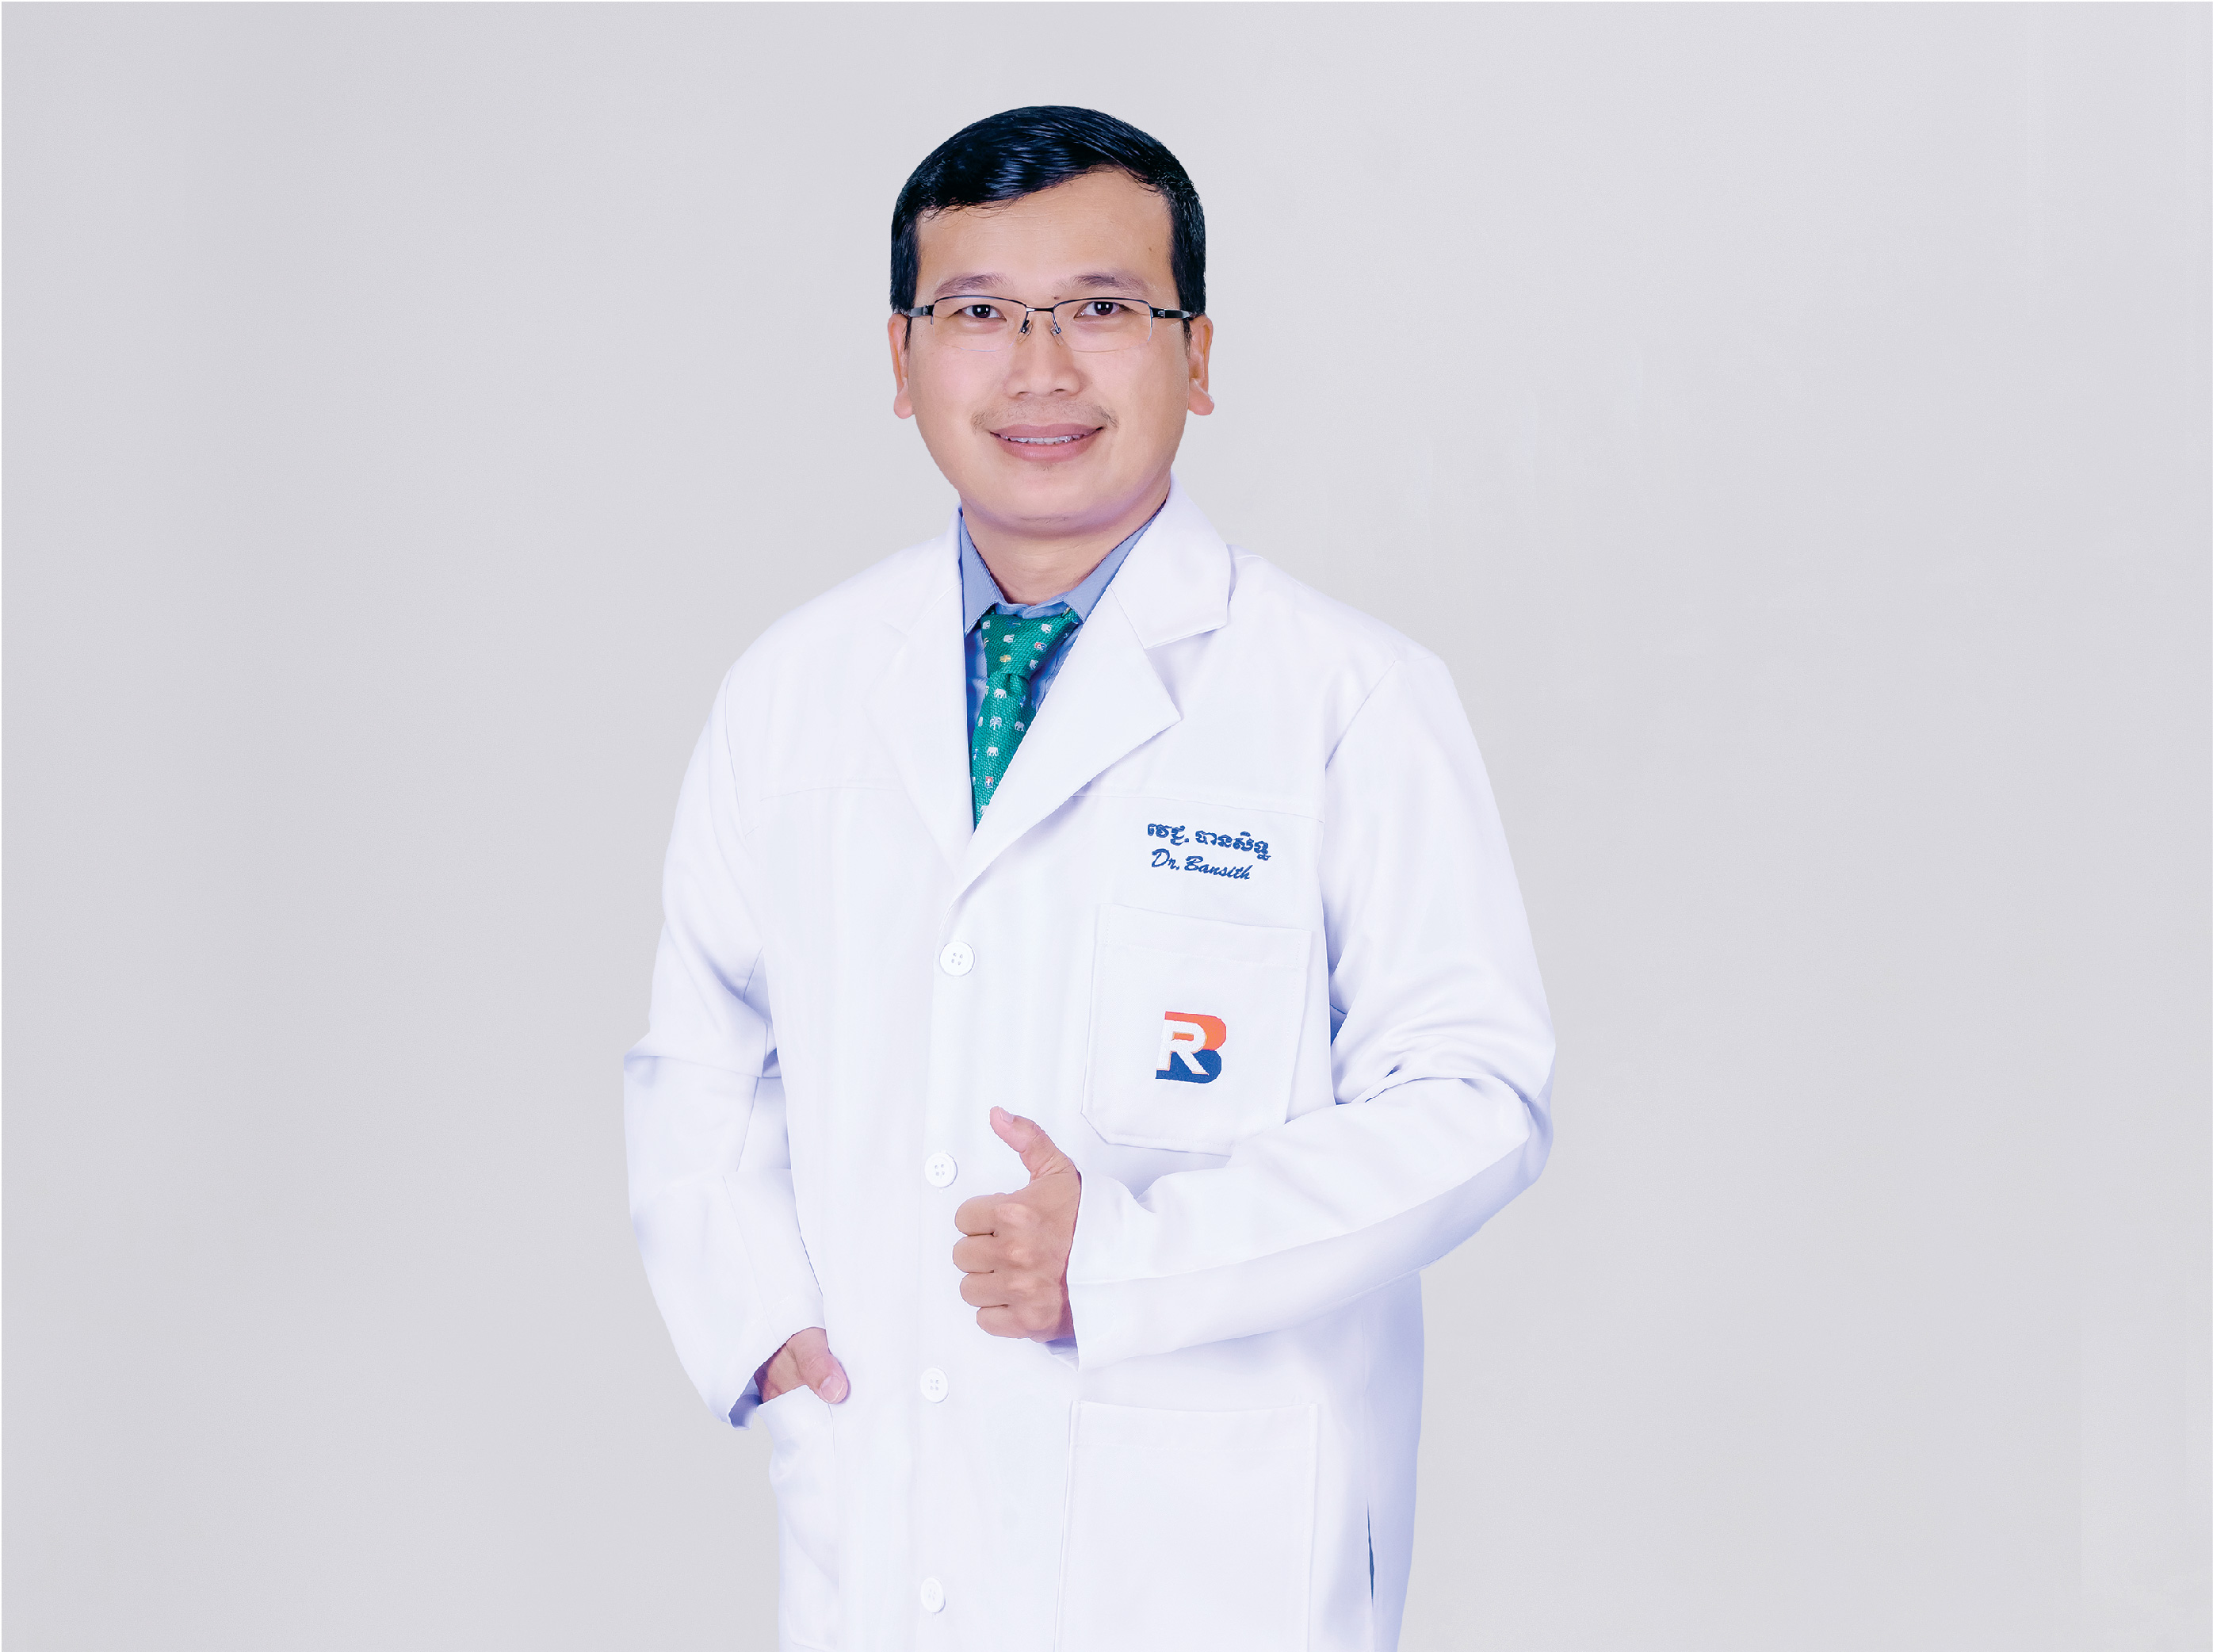 Dr. Sun Bansith